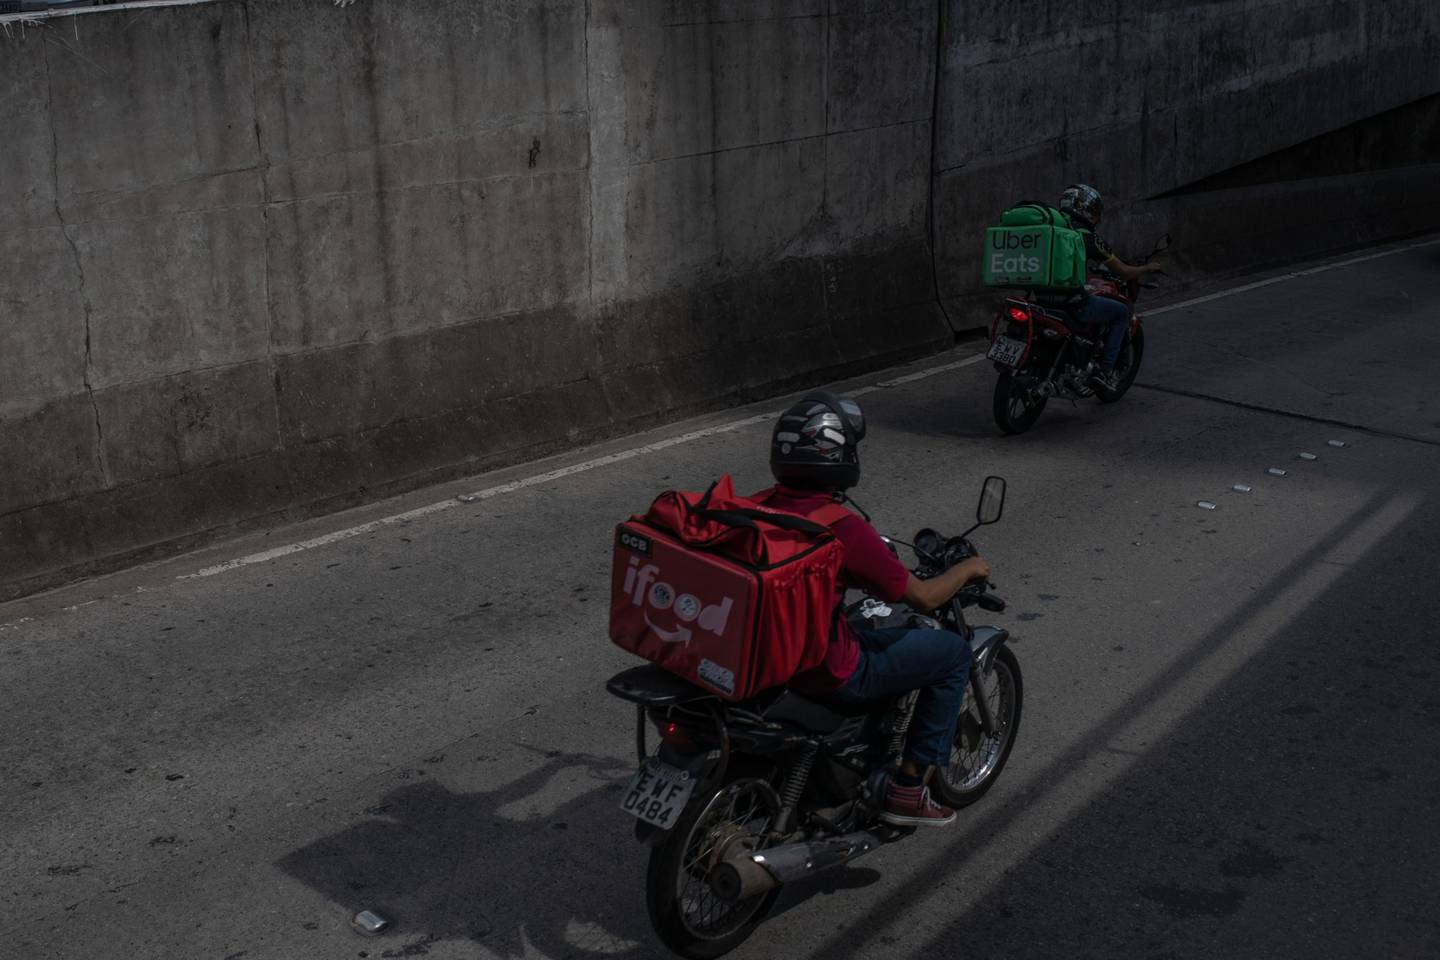 Trabajadores con mochilas aislantes de iFood y Uber Eats montan en motocicletas mientras hacen entregas en Sao Paulo, Brasil, el miércoles 1 de abril de 2020.dfd